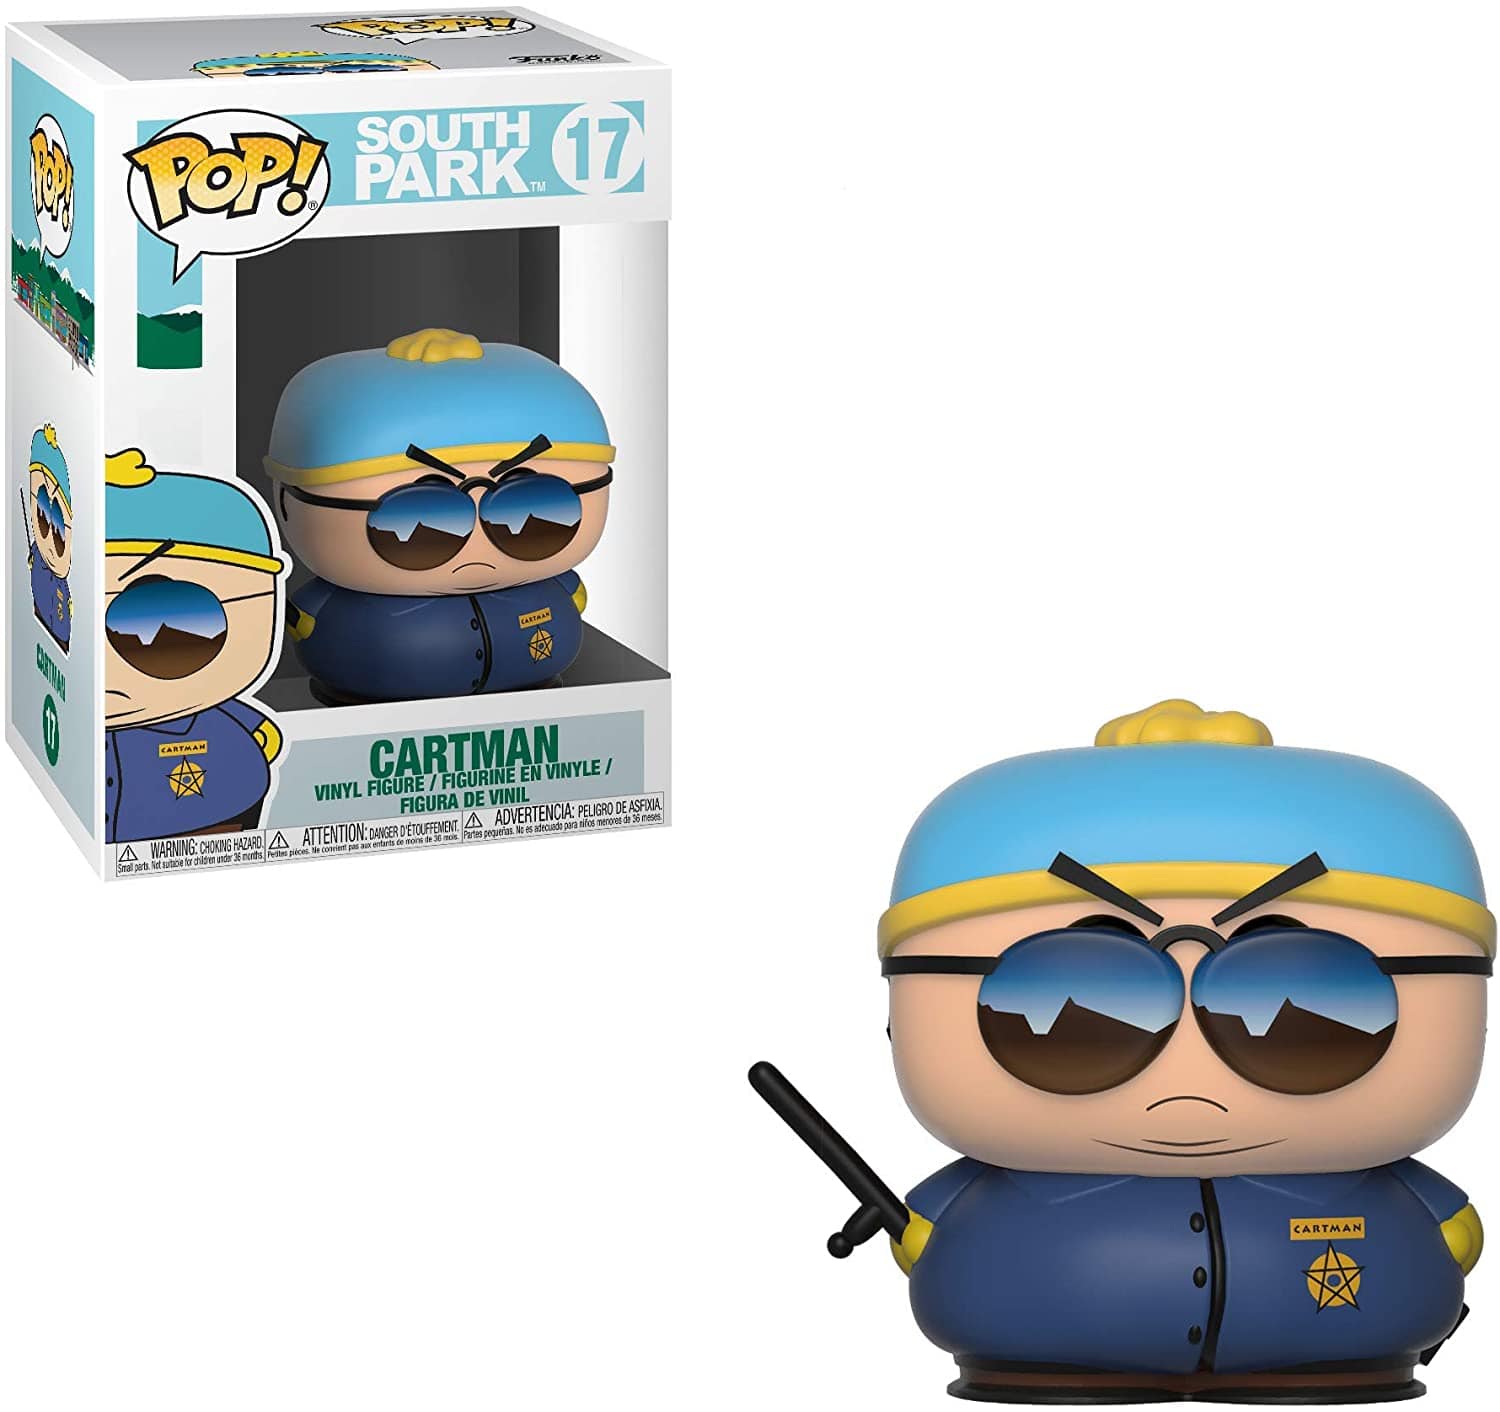 Funko Pop!: South Park - Cartman, Officer - Third Eye